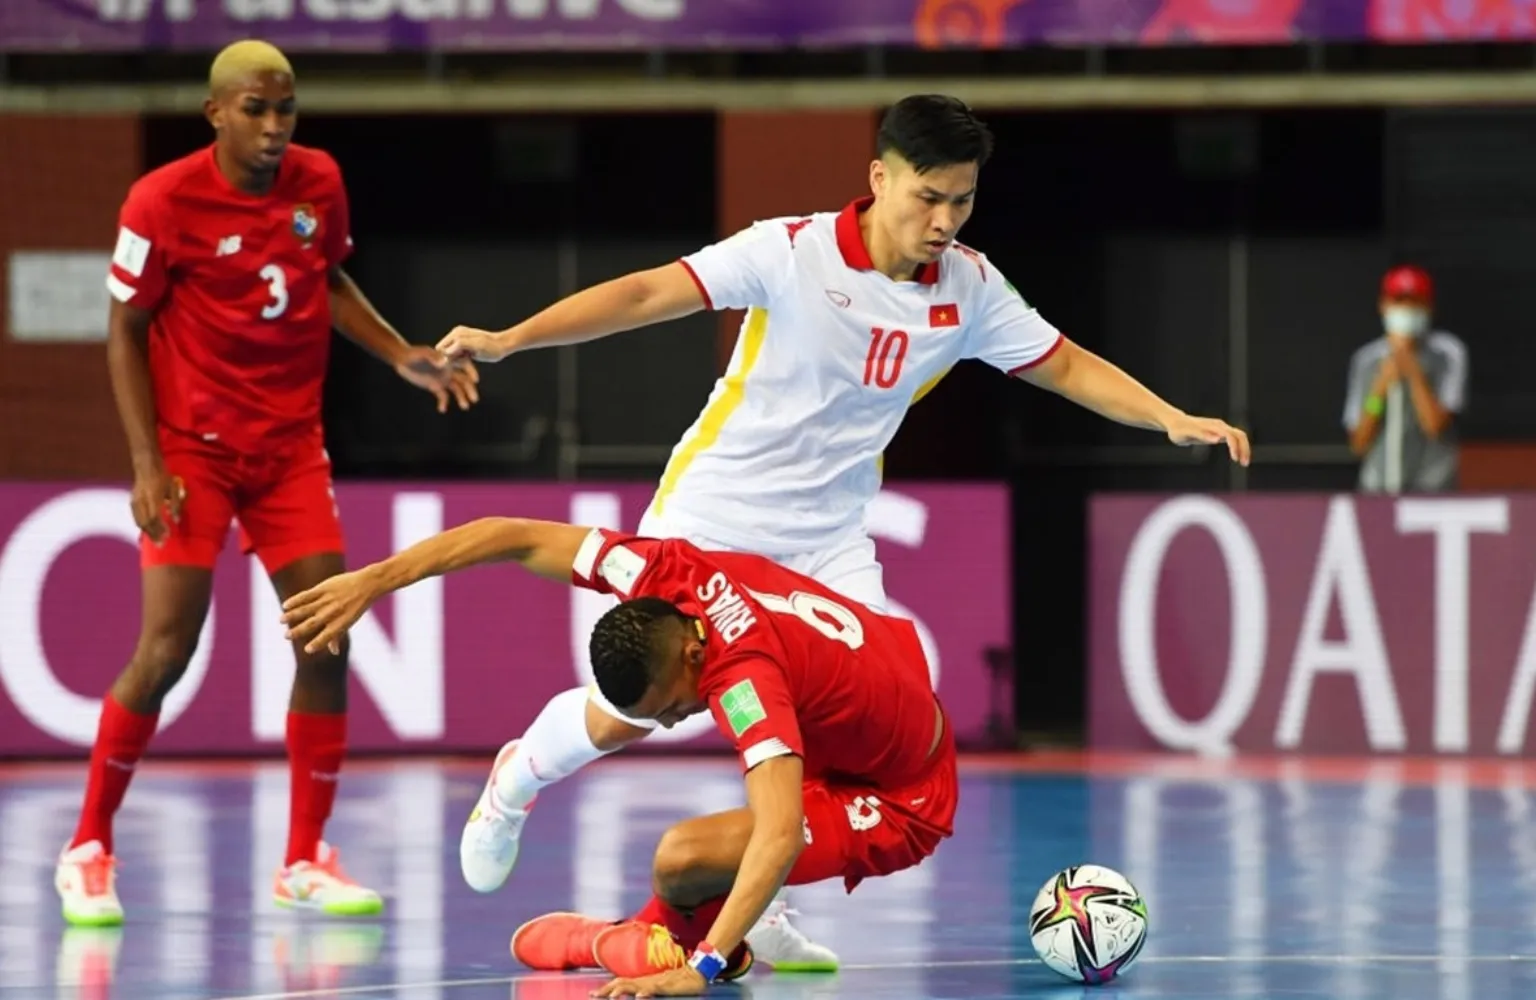 Futsal có nhiều điểm khác biệt so với bóng đá truyền thống